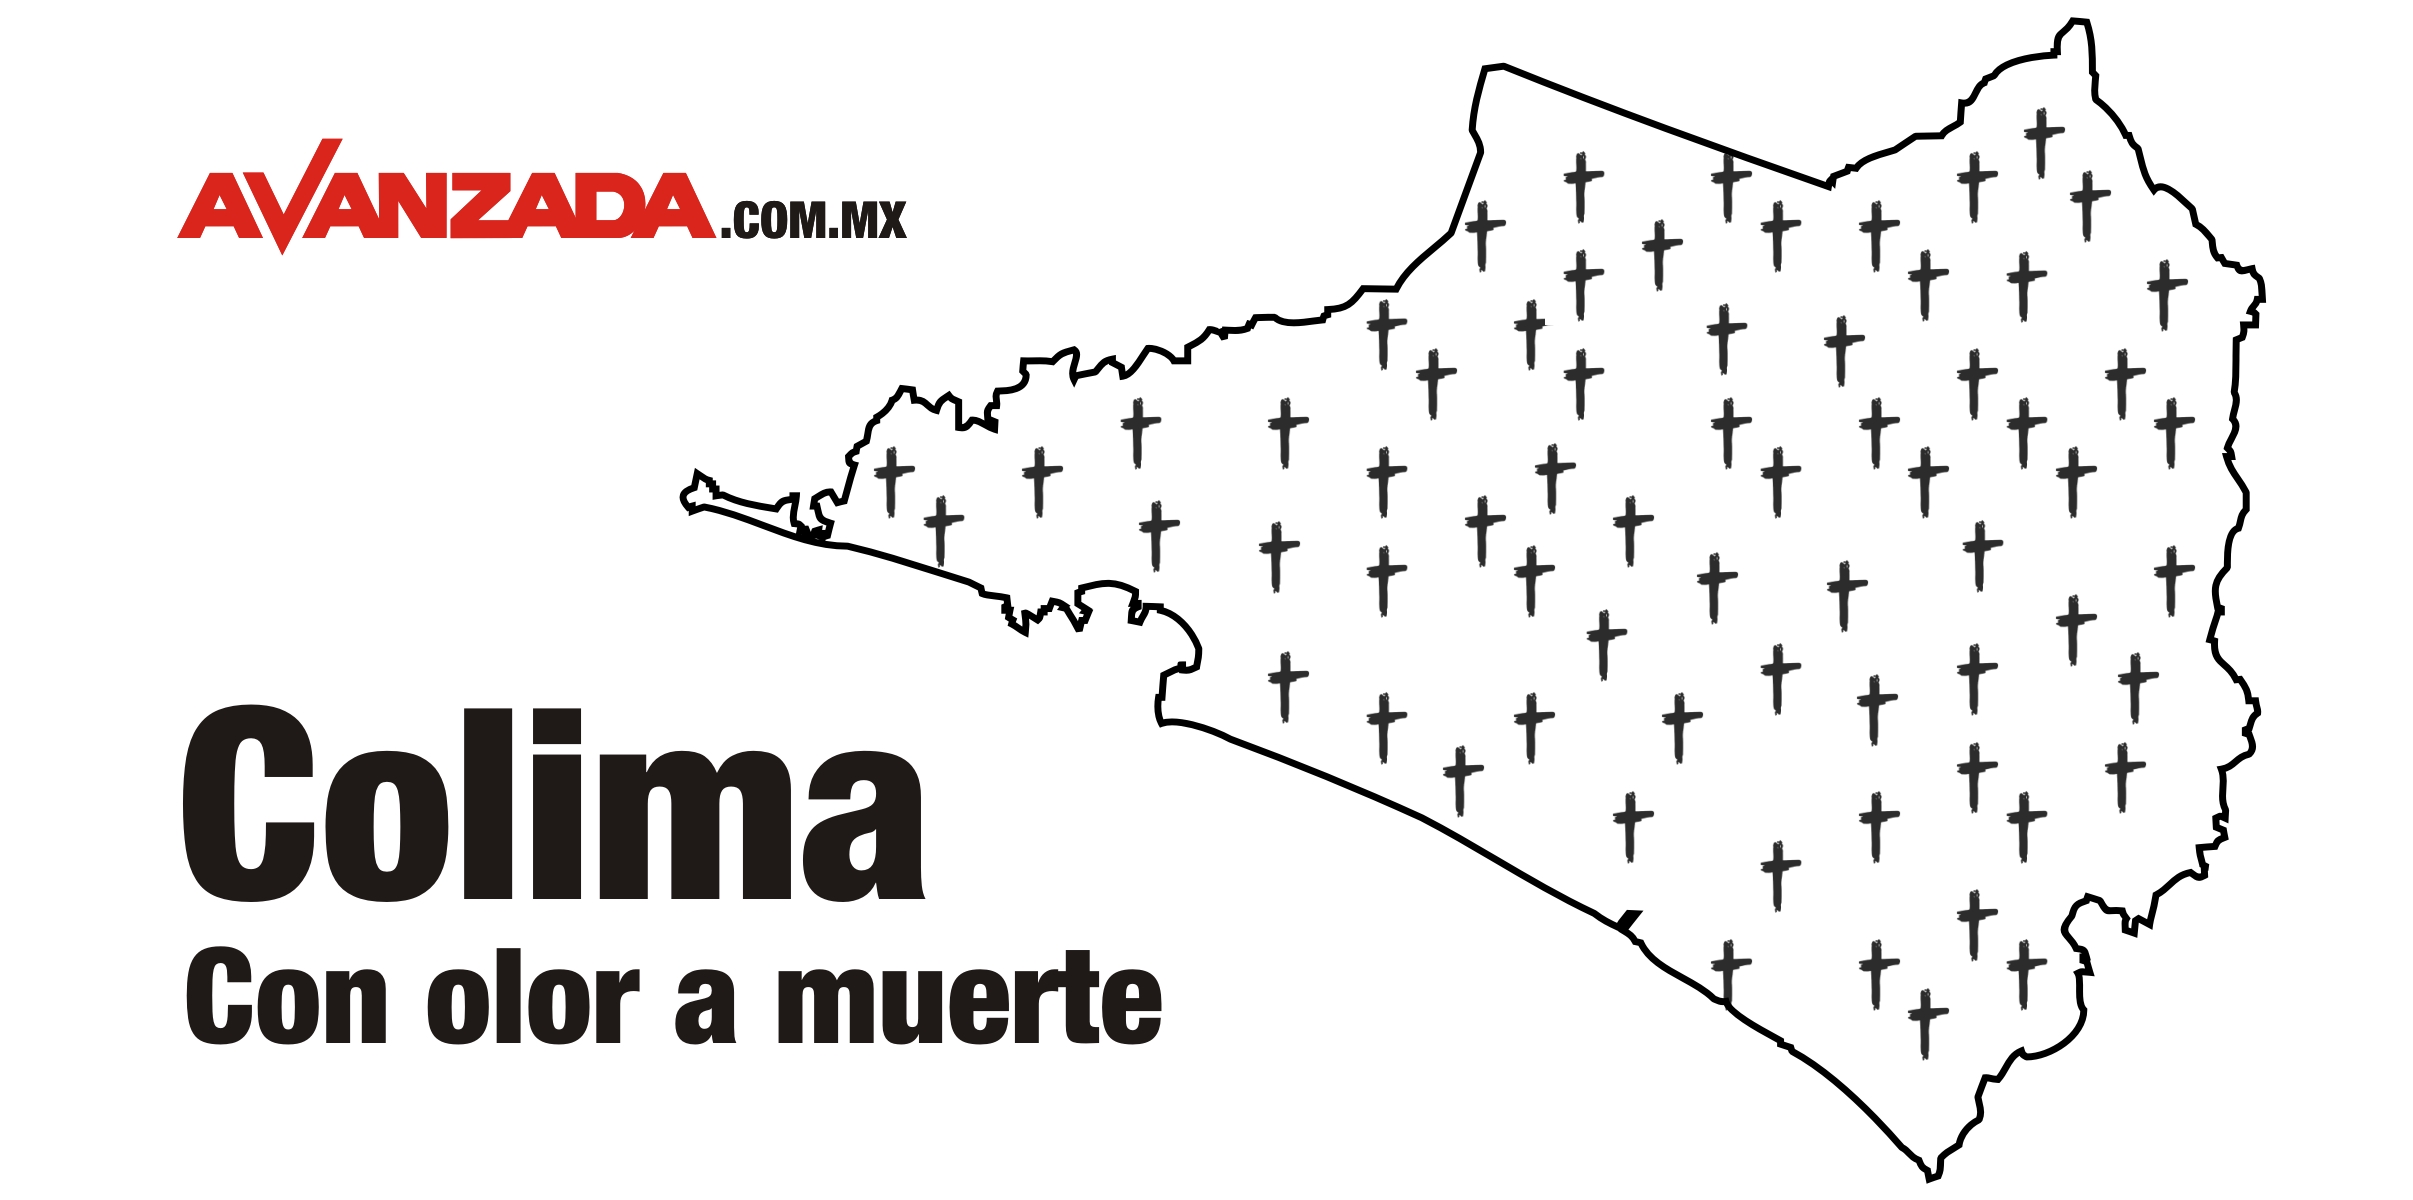 Asesinaron a 74 personas en Colima durante el mes de diciembre